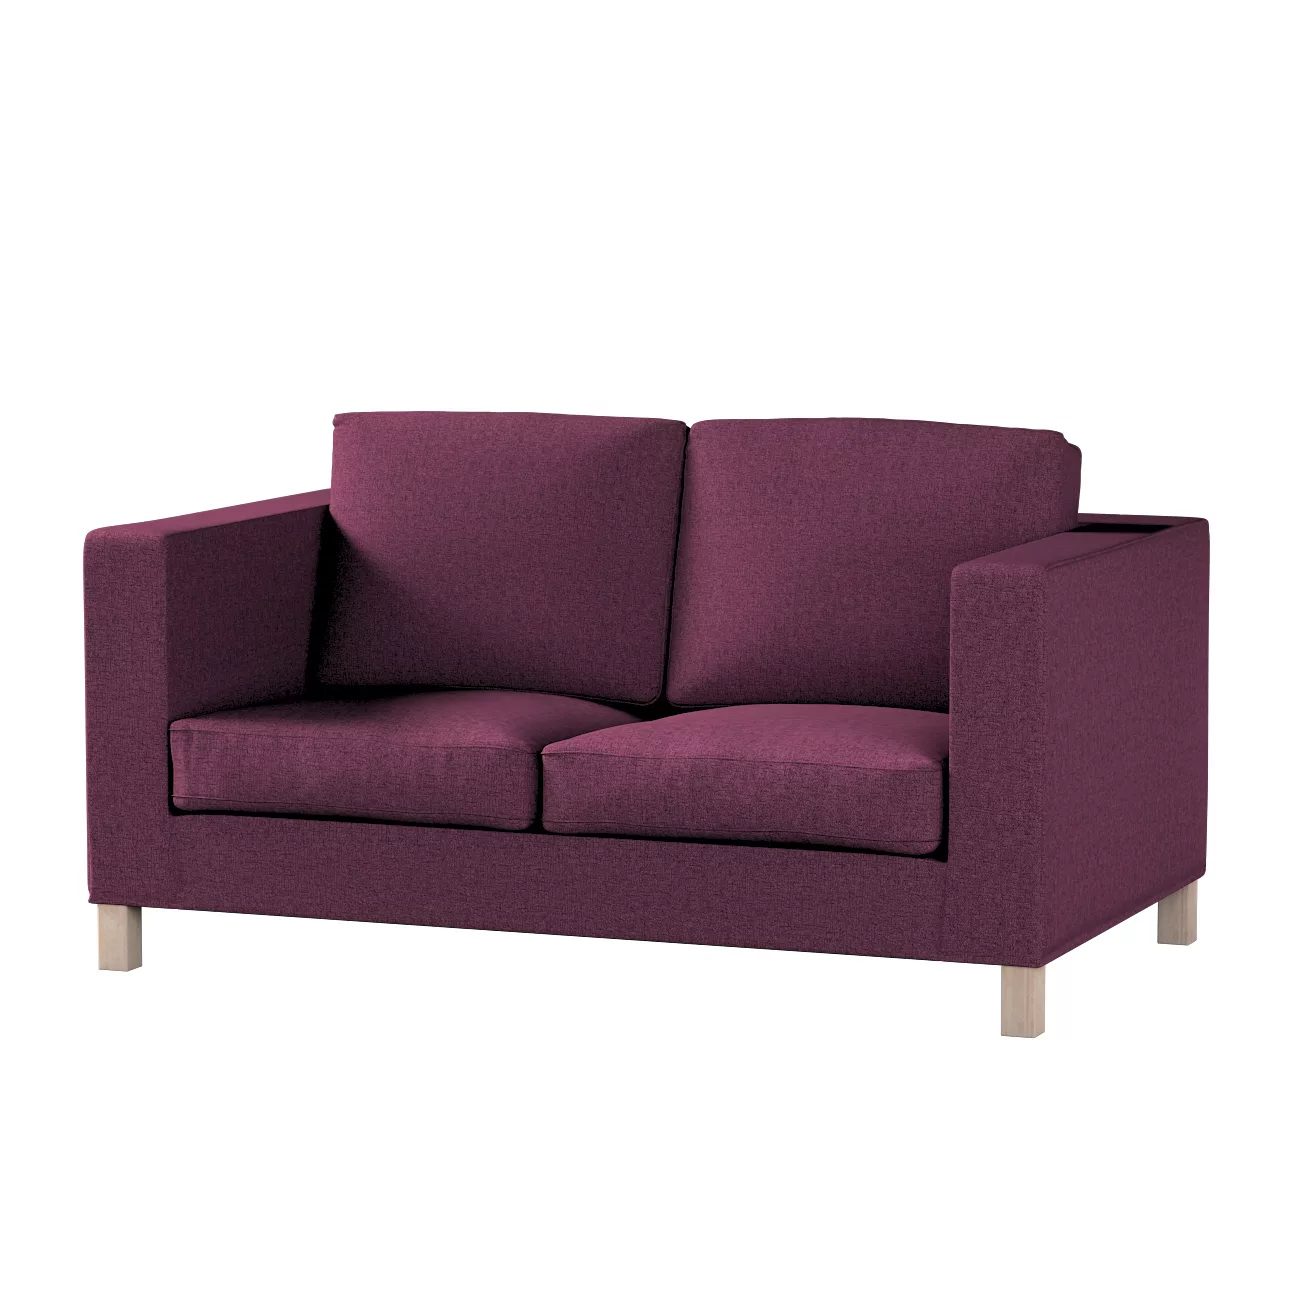 Bezug für Karlanda 2-Sitzer Sofa nicht ausklappbar, kurz, pflaumenviolett, günstig online kaufen